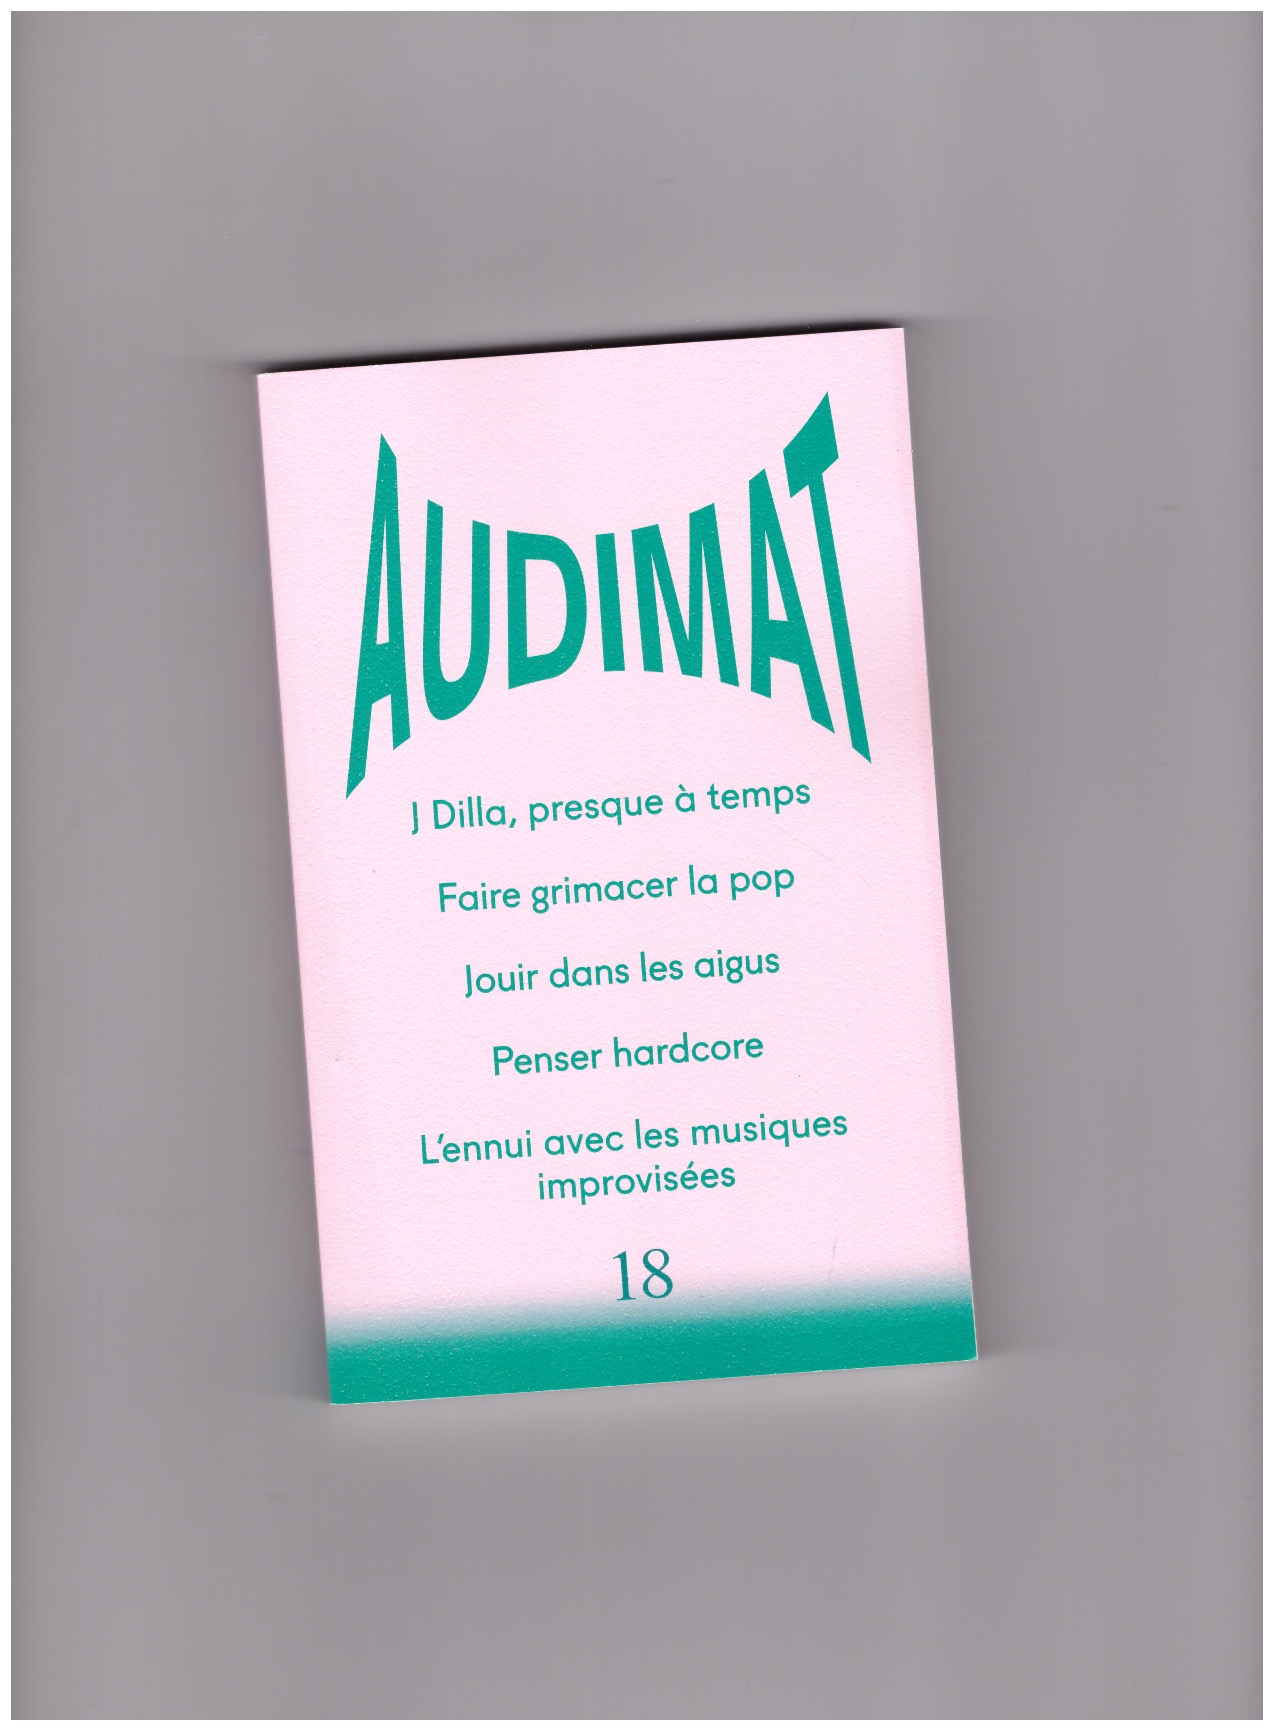 HEUGUET, Guillaume; VAUTHIER, Fanny (eds.) - Audimat #18